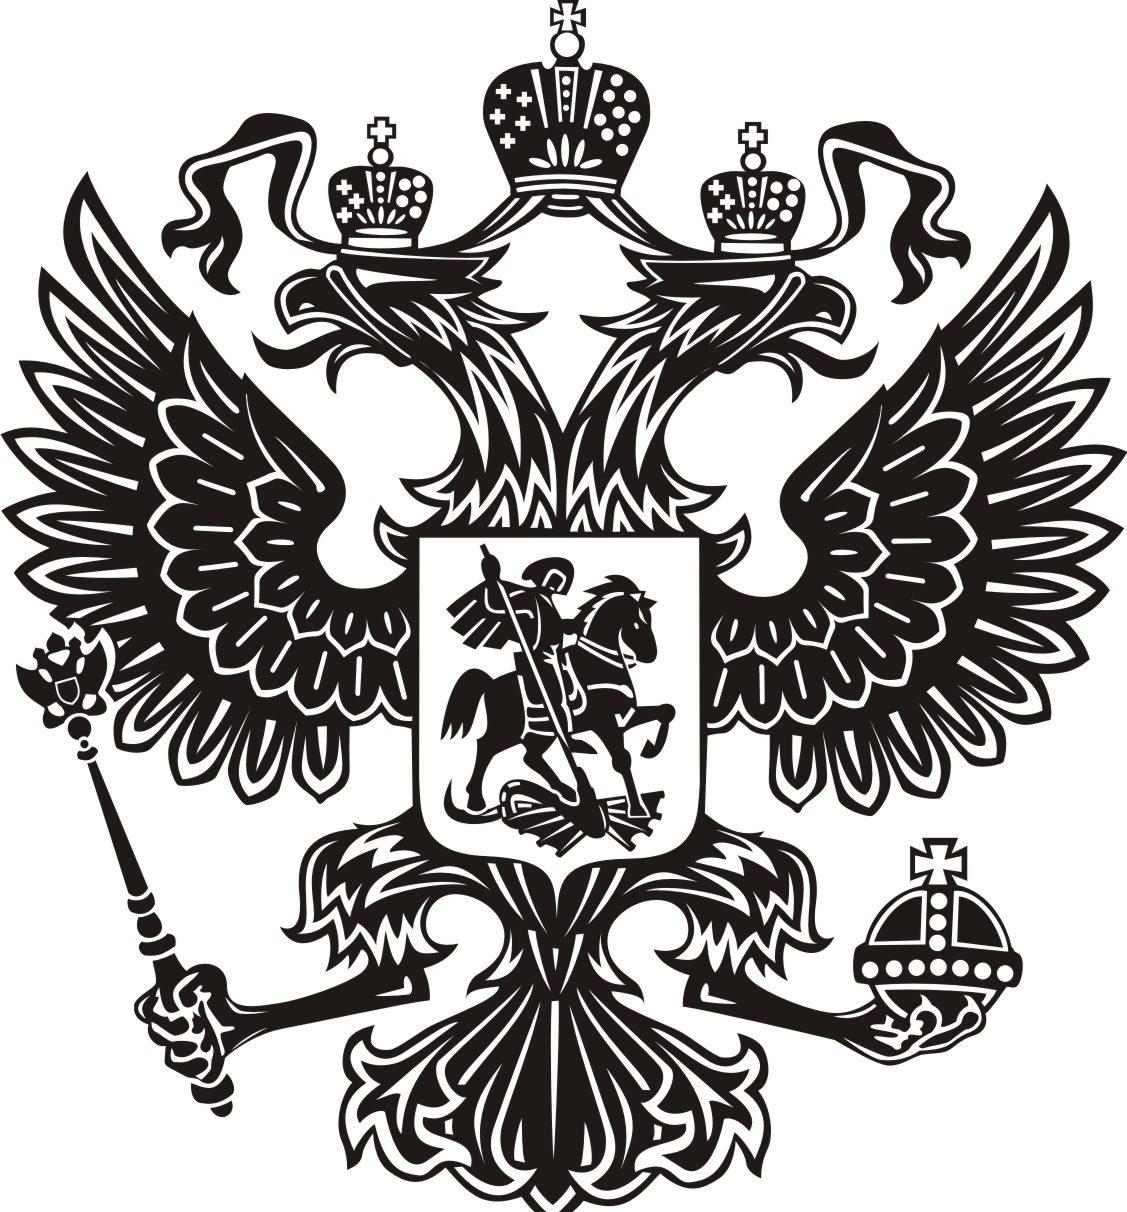 символы Российской Федерации государственный герб